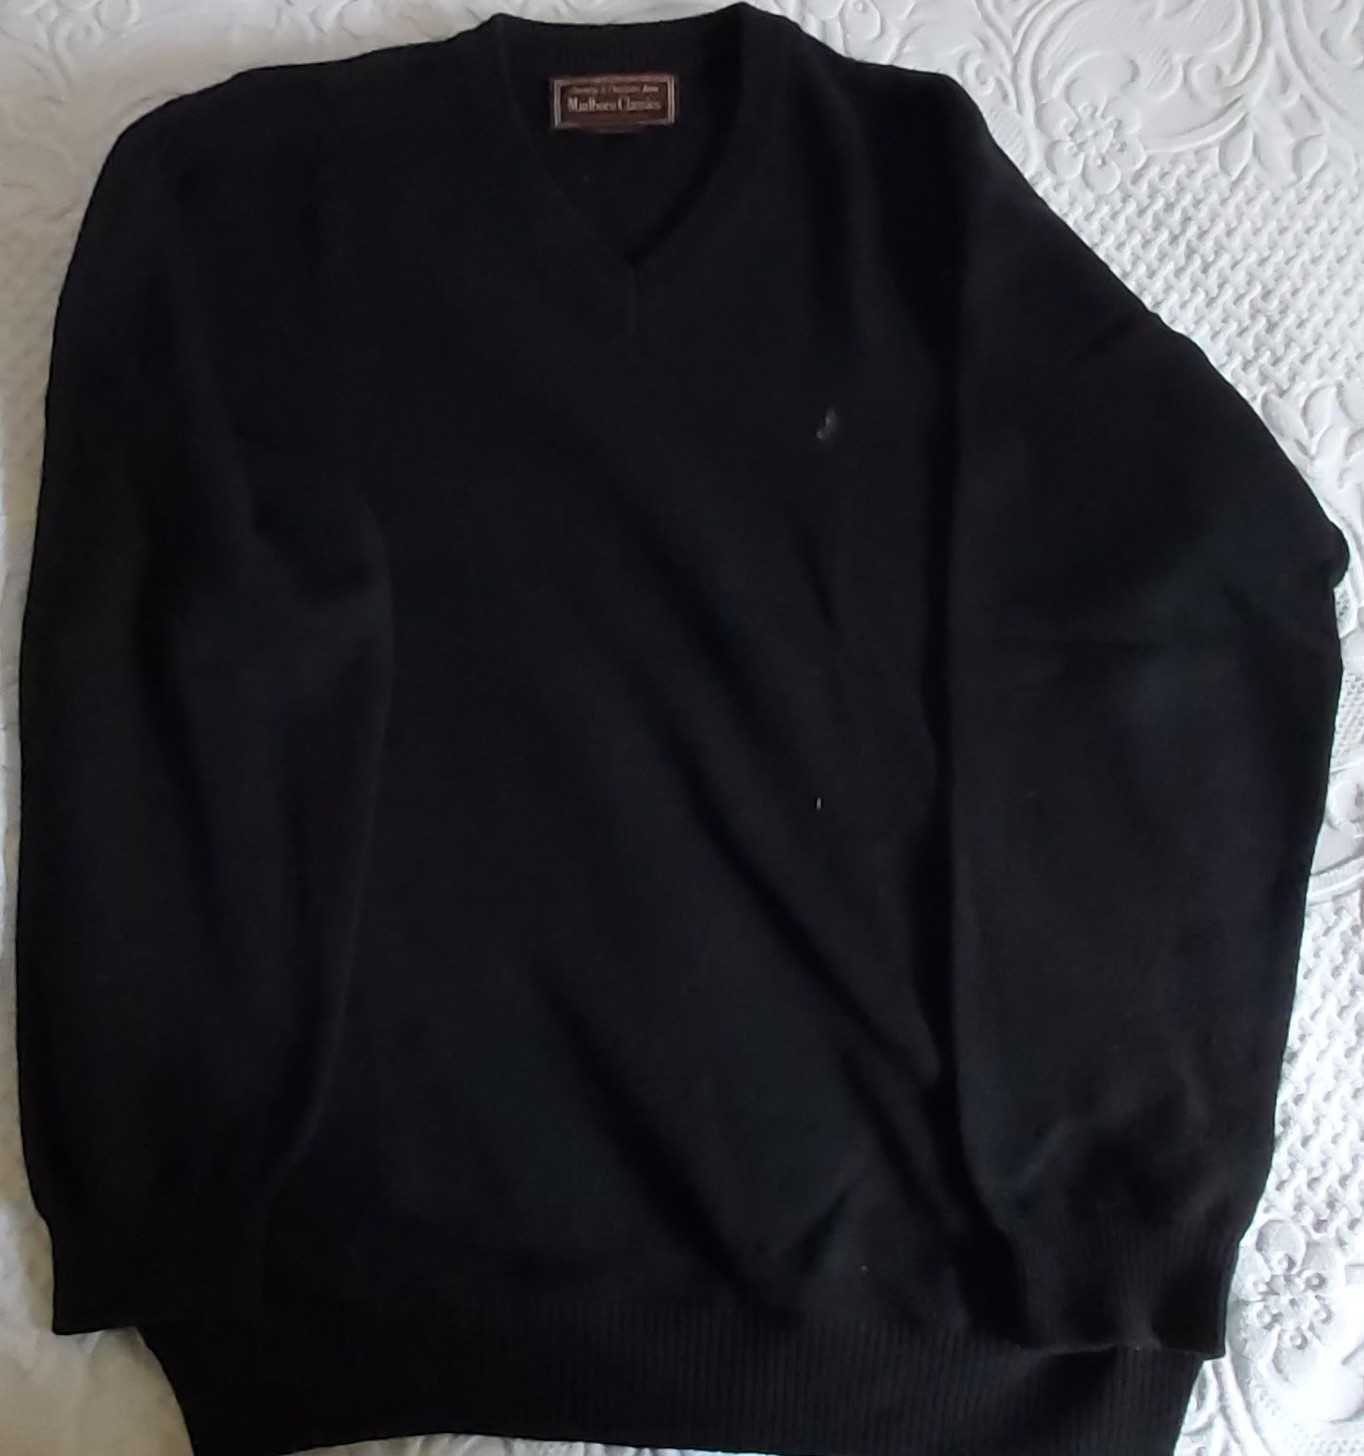 Malboro - Camisola de cor preta